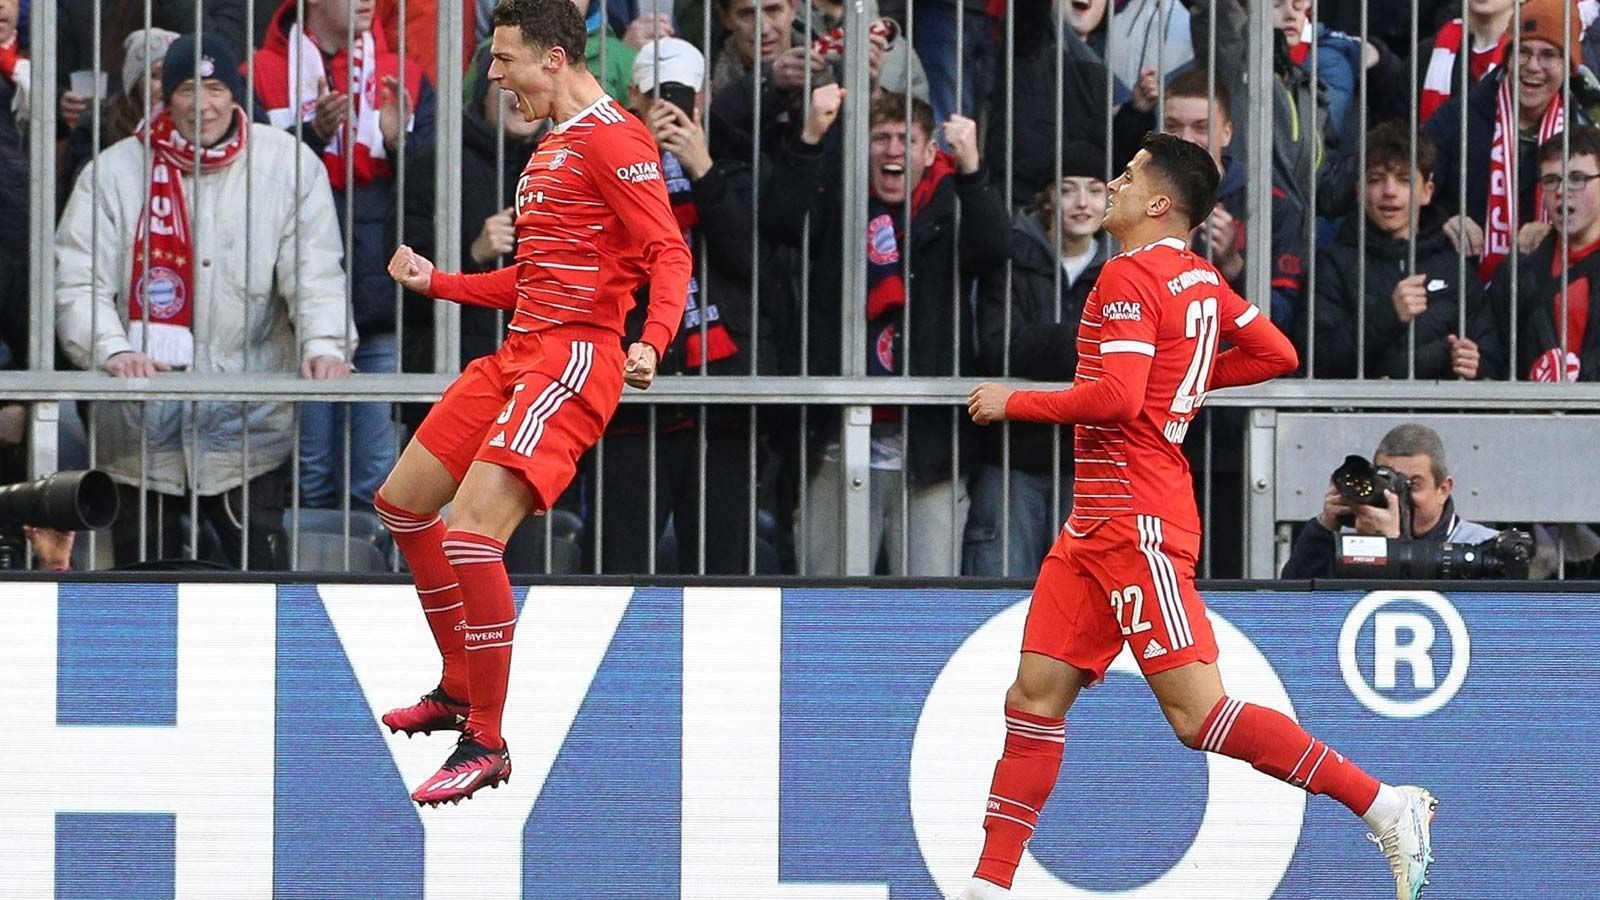 
                <strong>FC Bayern München gegen FC Augsburg: Noten der Bayern-Stars</strong><br>
                Der FC Bayern München will im Rennen um die Meisterschaft Druck auf Verfolger Borussia Dortmund aufbauen. Am 24. Spieltag ging es gegen den FC Augsburg, der mit einem 5:3 nach Hause geschickt wurde. ran hat die Spieler der Bayern in einer Einzelkritik benotet.
              